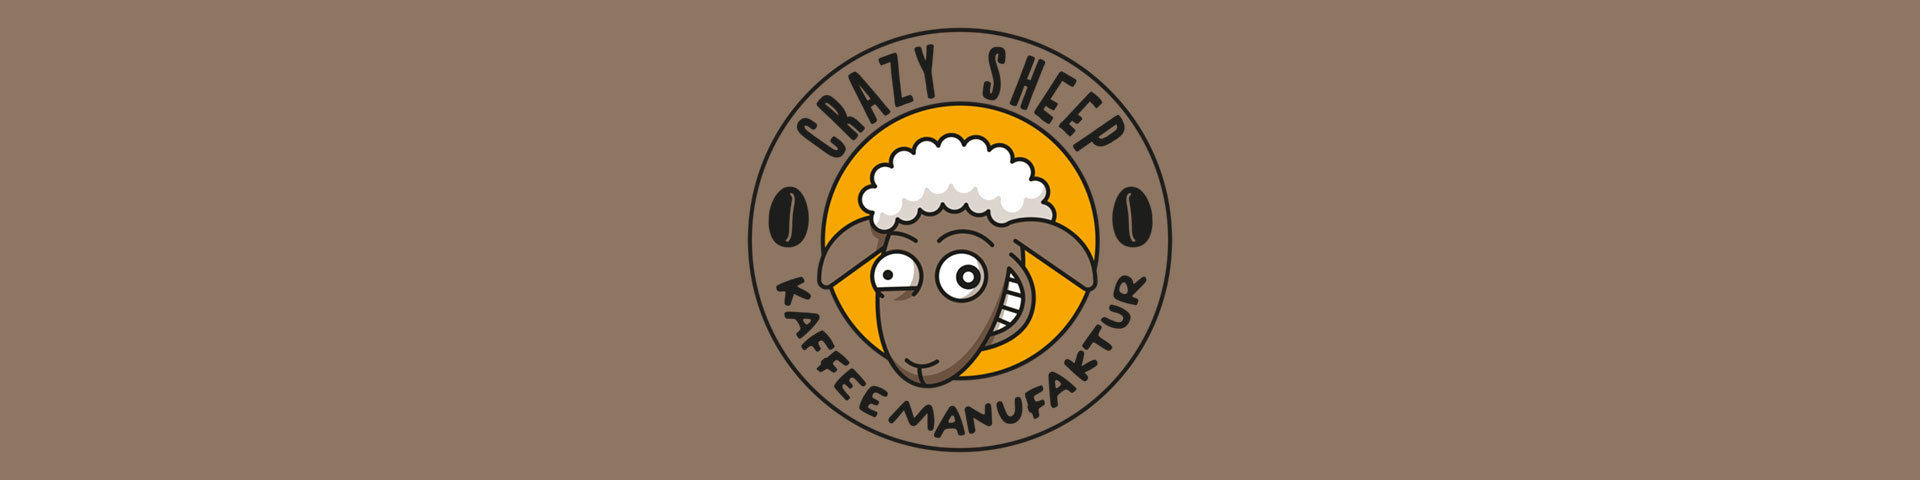 Crazy Sheep - Verrückt nach gutem Kaffee!